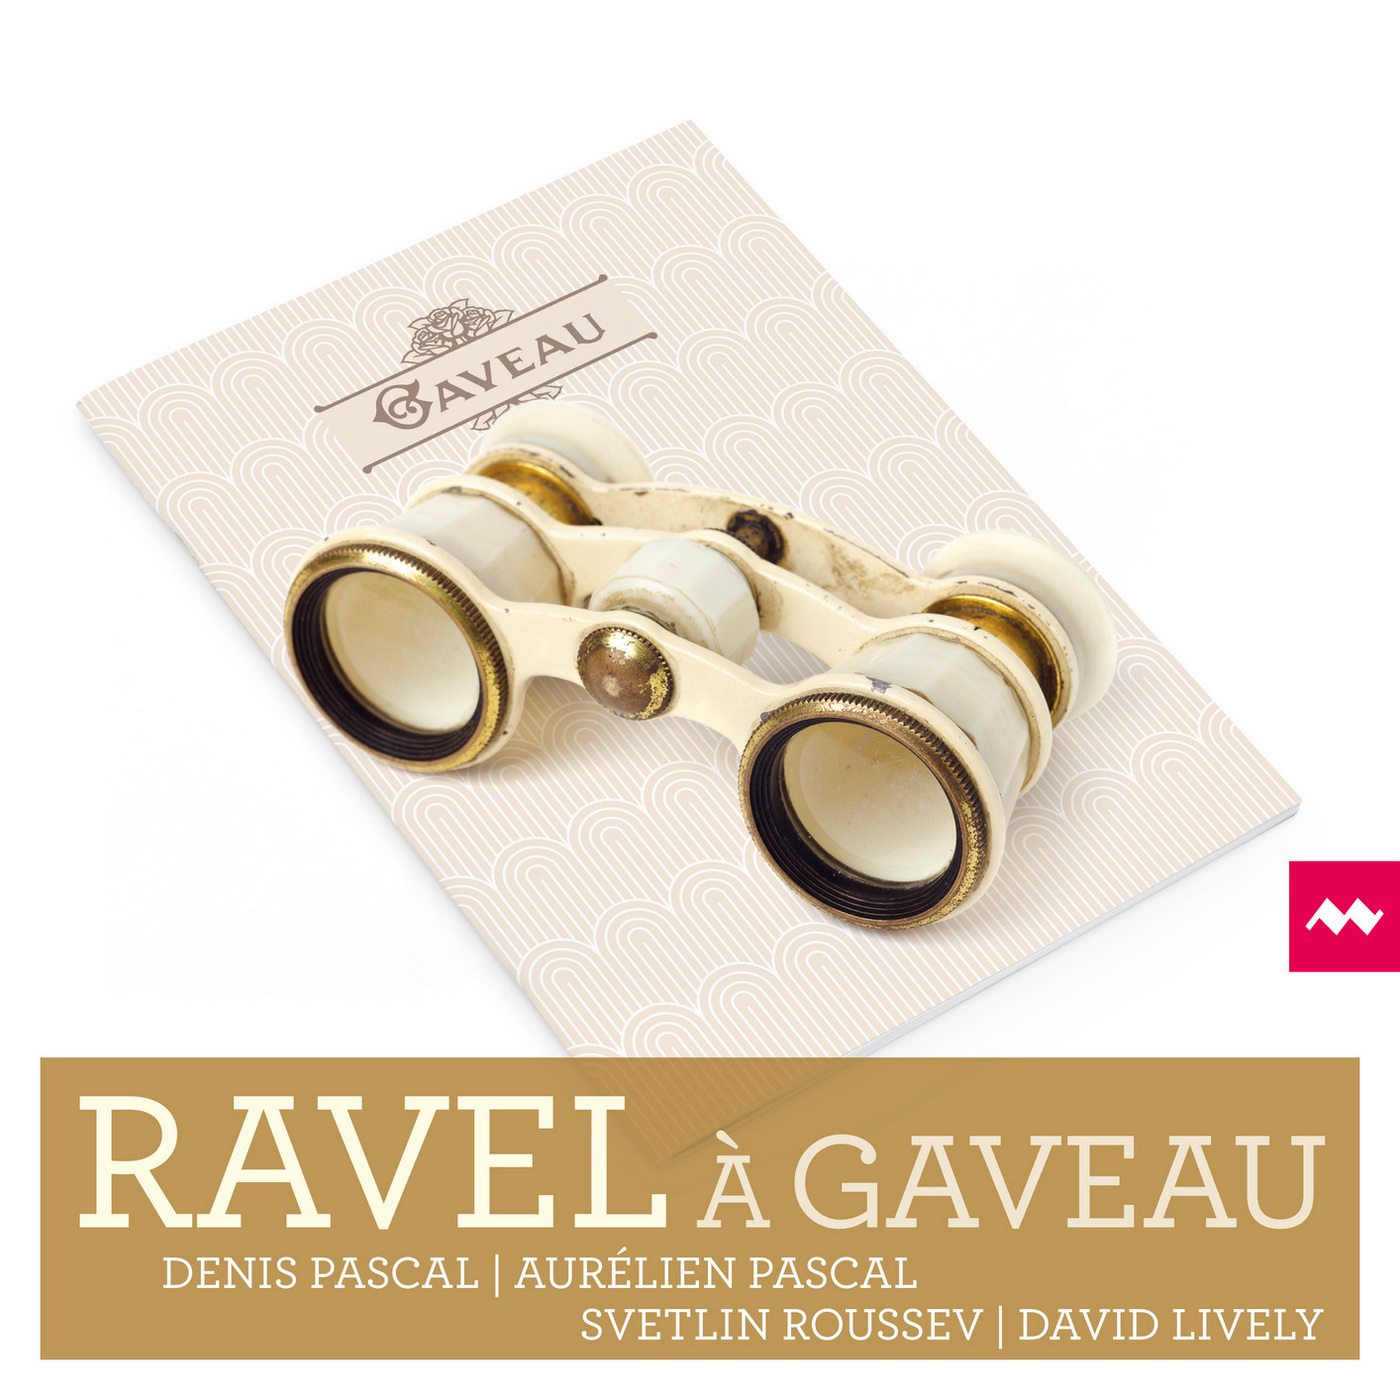 Denis Pascal, Aurelien Pascal, Svetlin Roussev & David Lively – Ravel à Gaveau (2019) [FLAC 24bit/96kHz]